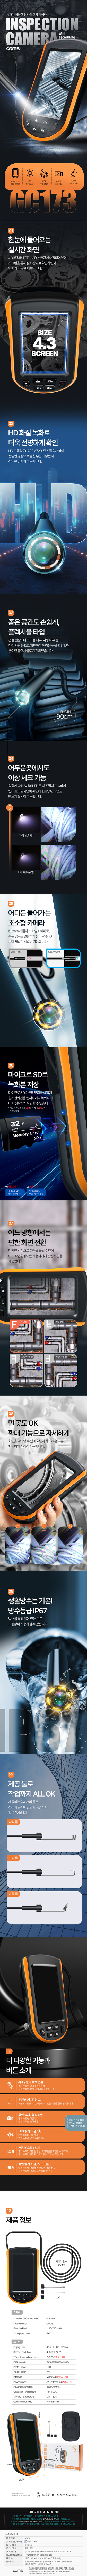 산업용카메라 내시경 소형카메라 정검 탐지용카메라 HD 녹화